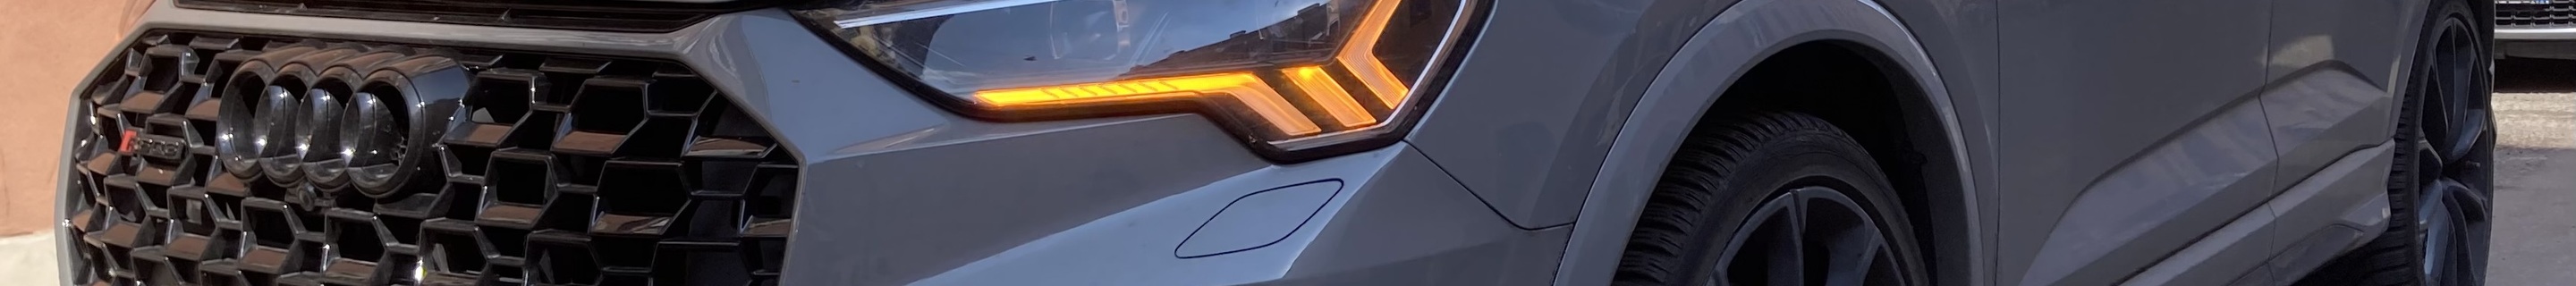 Audi RS Q3 Sportback 2020